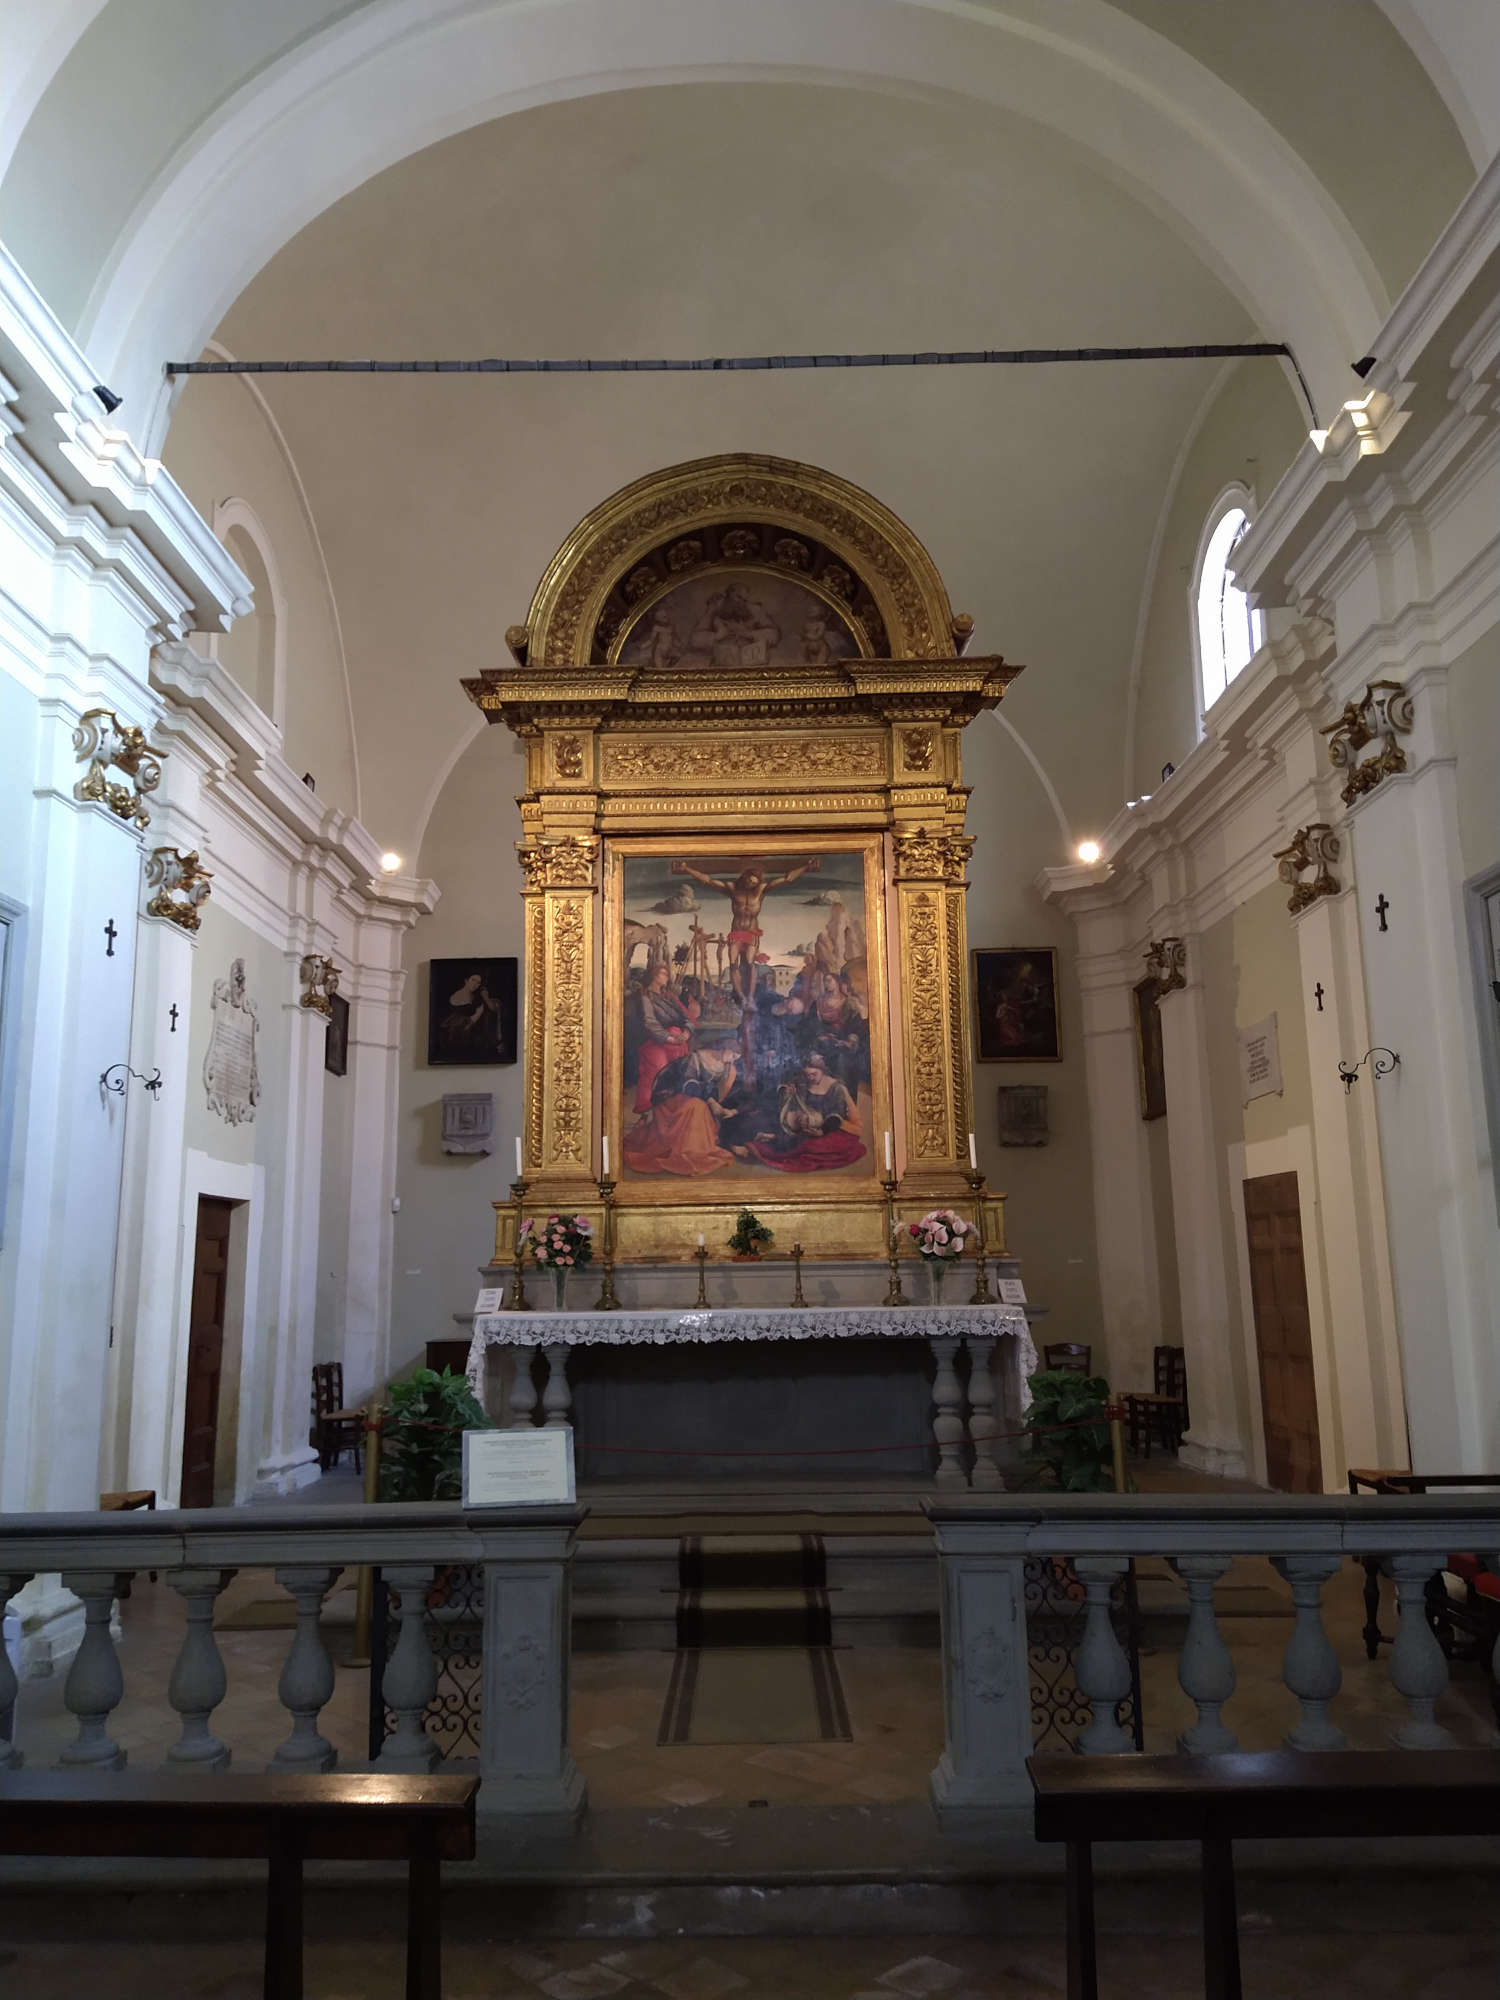 Luca Signorelli's Stendardo della Crocifissione in the church of Sant'Antonio Abate in Sansepolcro